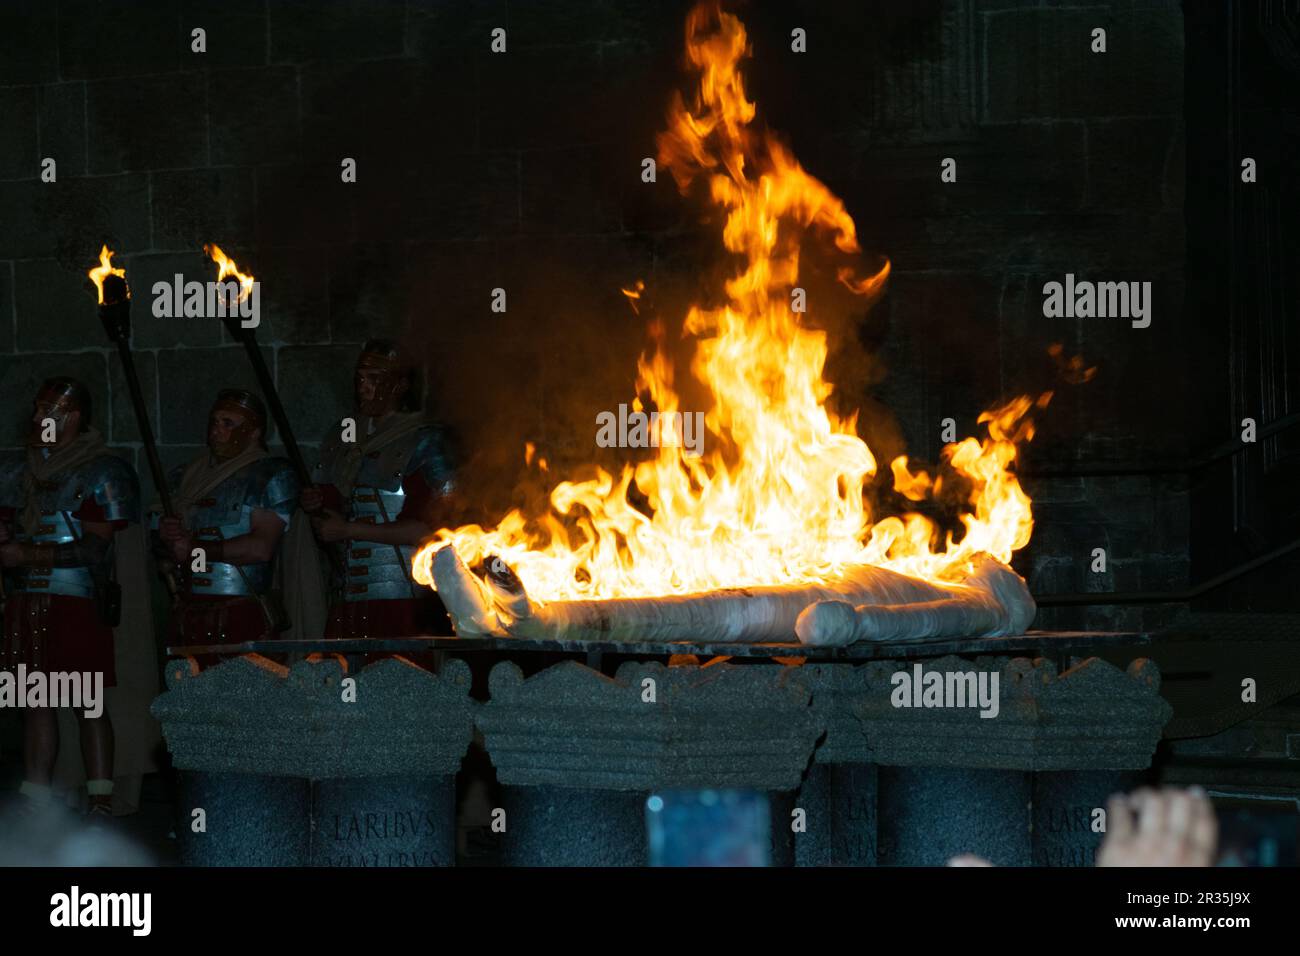 L'incendie d'un cadavre de soldats romains, rue Bracara Augusta agissant dans la ville de Braga, Portugal. Incinération d'une représentation de corps momifié. Banque D'Images